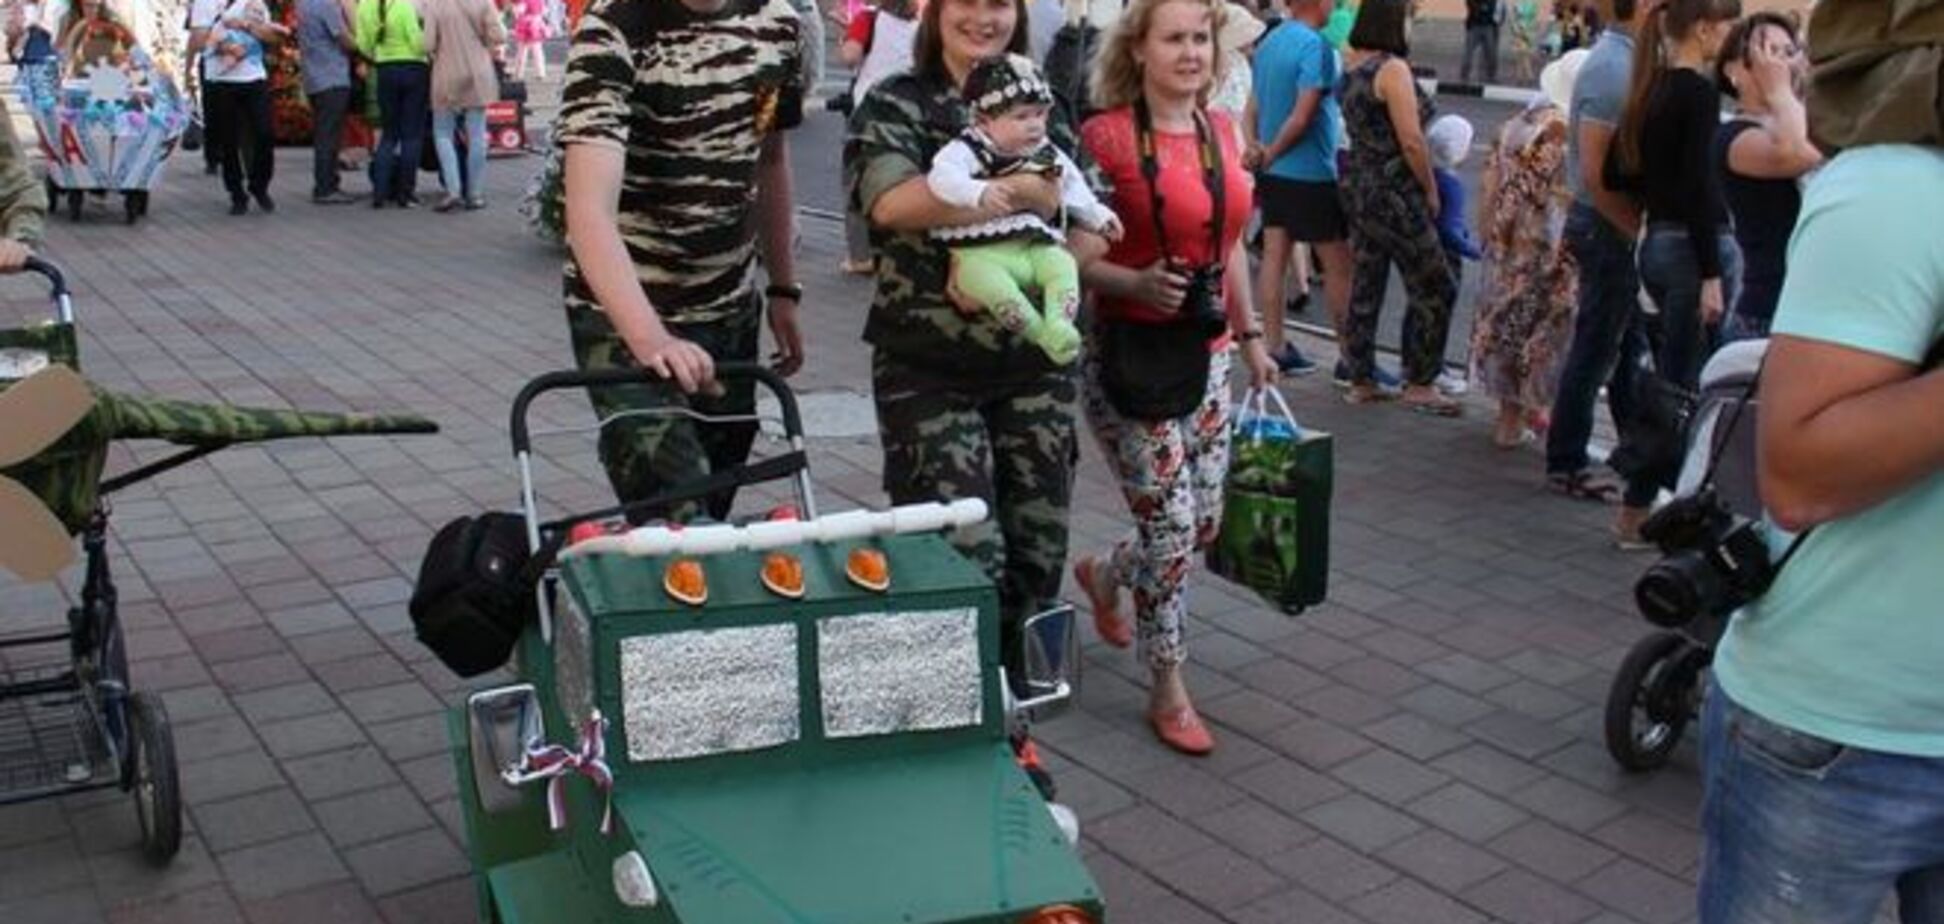 'Армата' курить збоку'! У Росії дітей возили у військових колясках: фотофакт